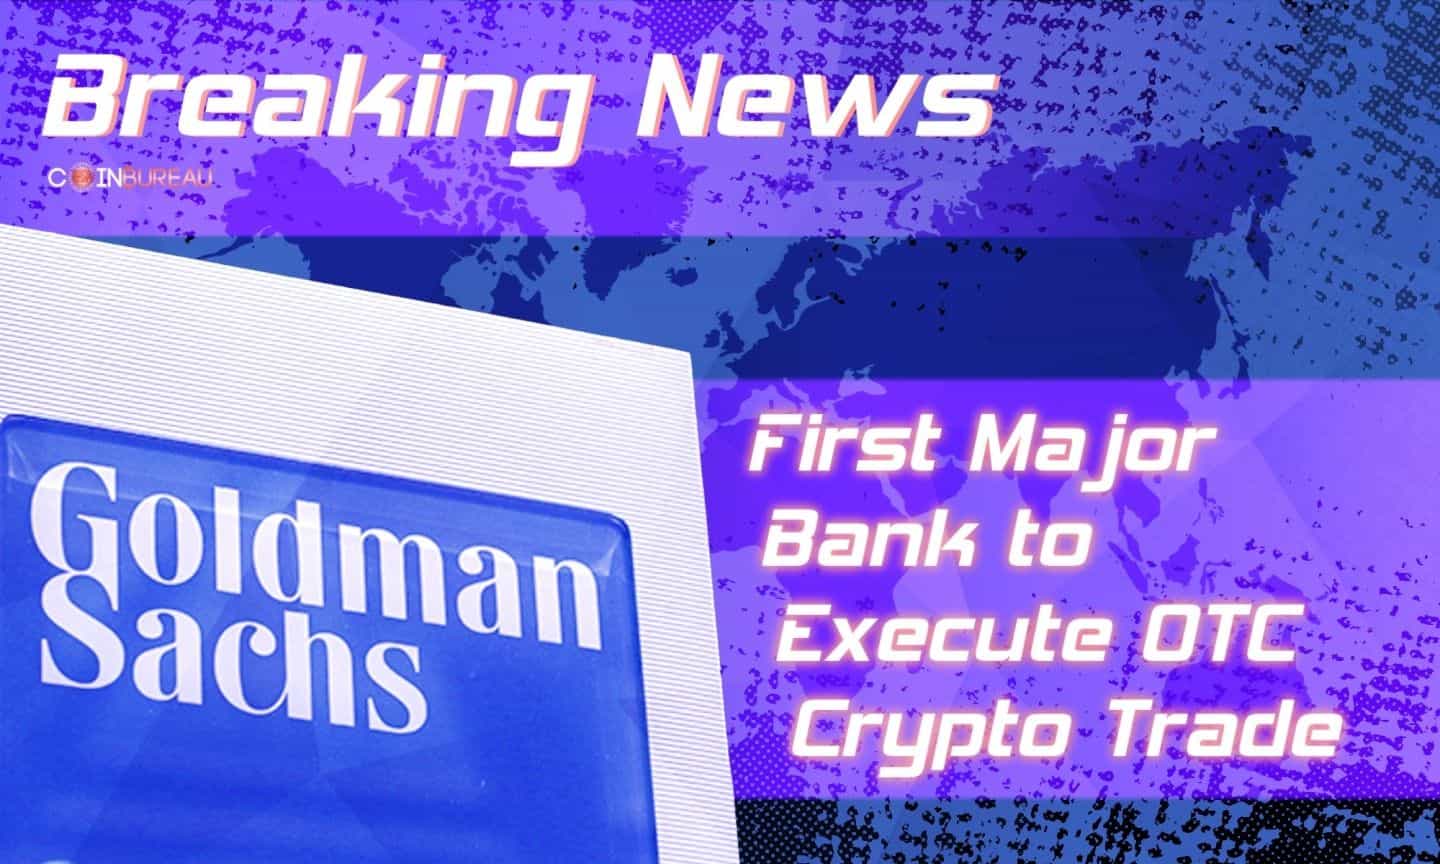 Goldman Sachs Becomes First Major Bank to Execute OTC Crypto Trade